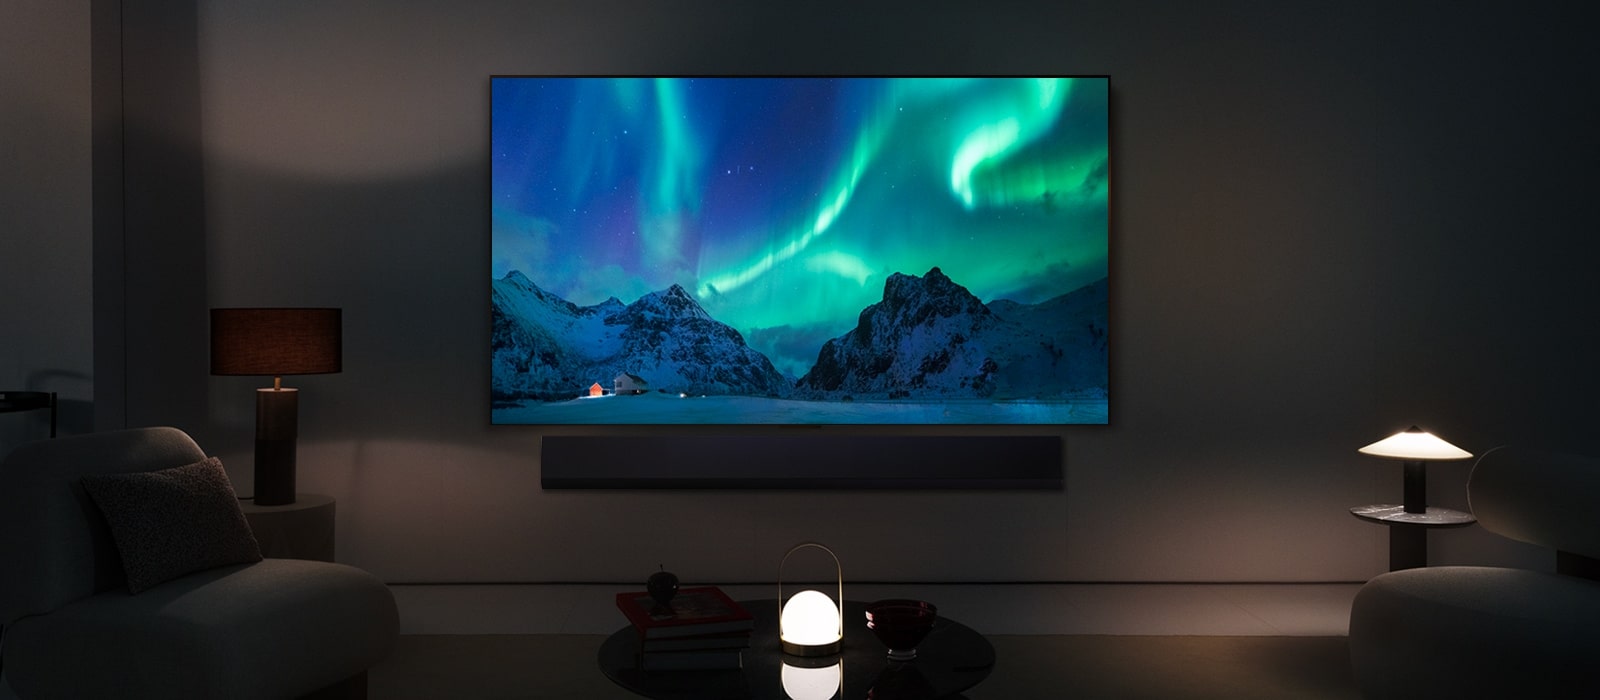 Телевизор LG OLED TV и звуковая панель LG Soundbar в современном жилом пространстве в ночное время. Изображение северного сияния на экране отображается с идеальным уровнем яркости.